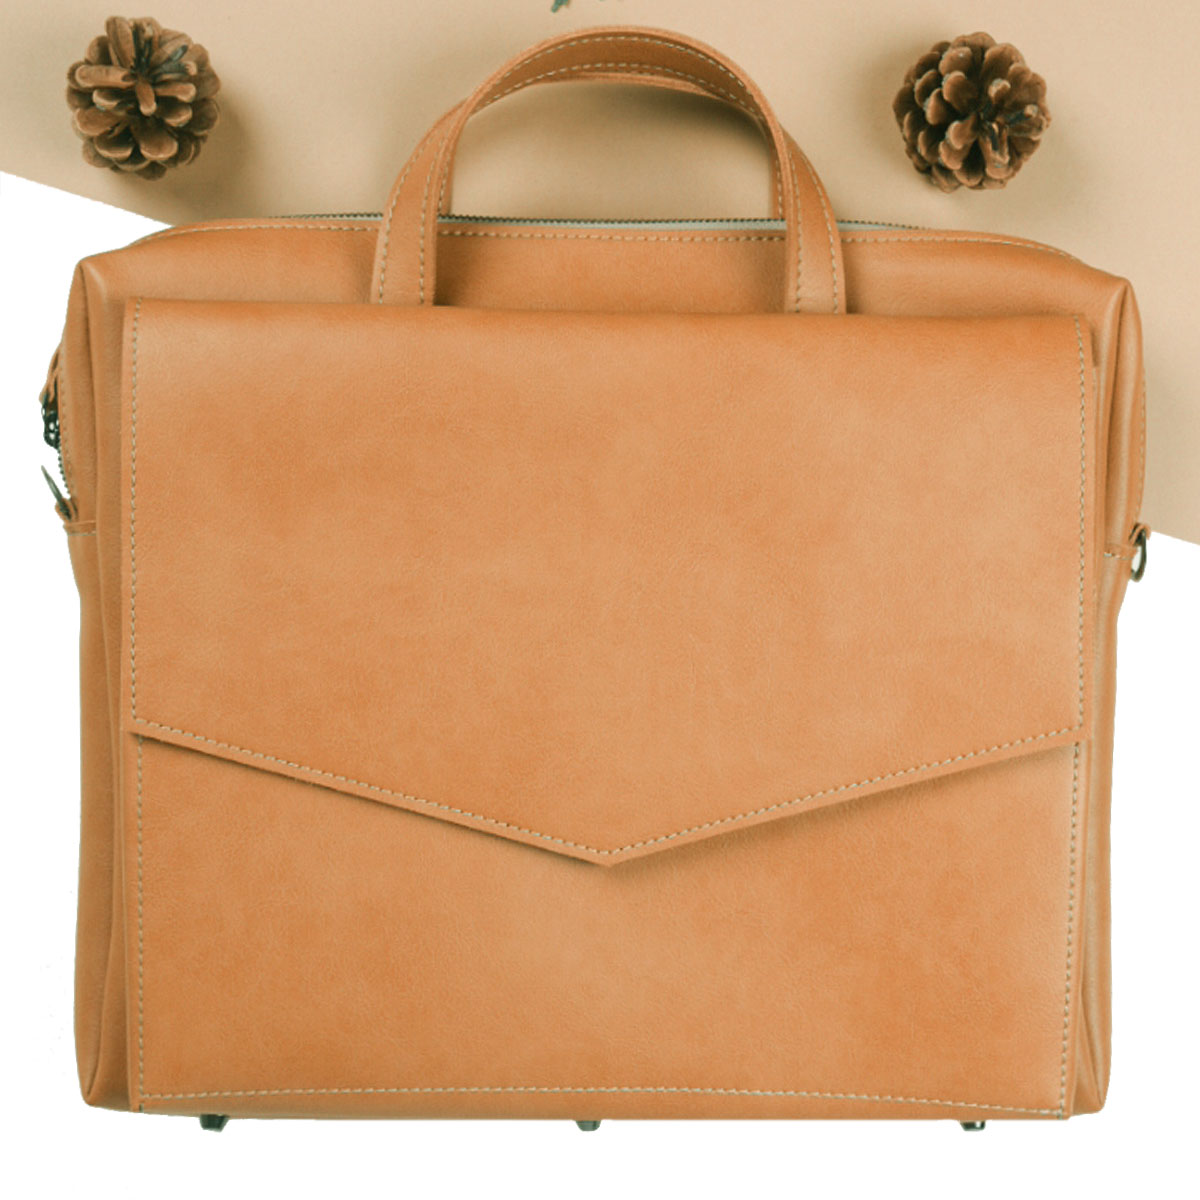 Sörenberg Briefcase - Premium Tote Bag from L&E Studio